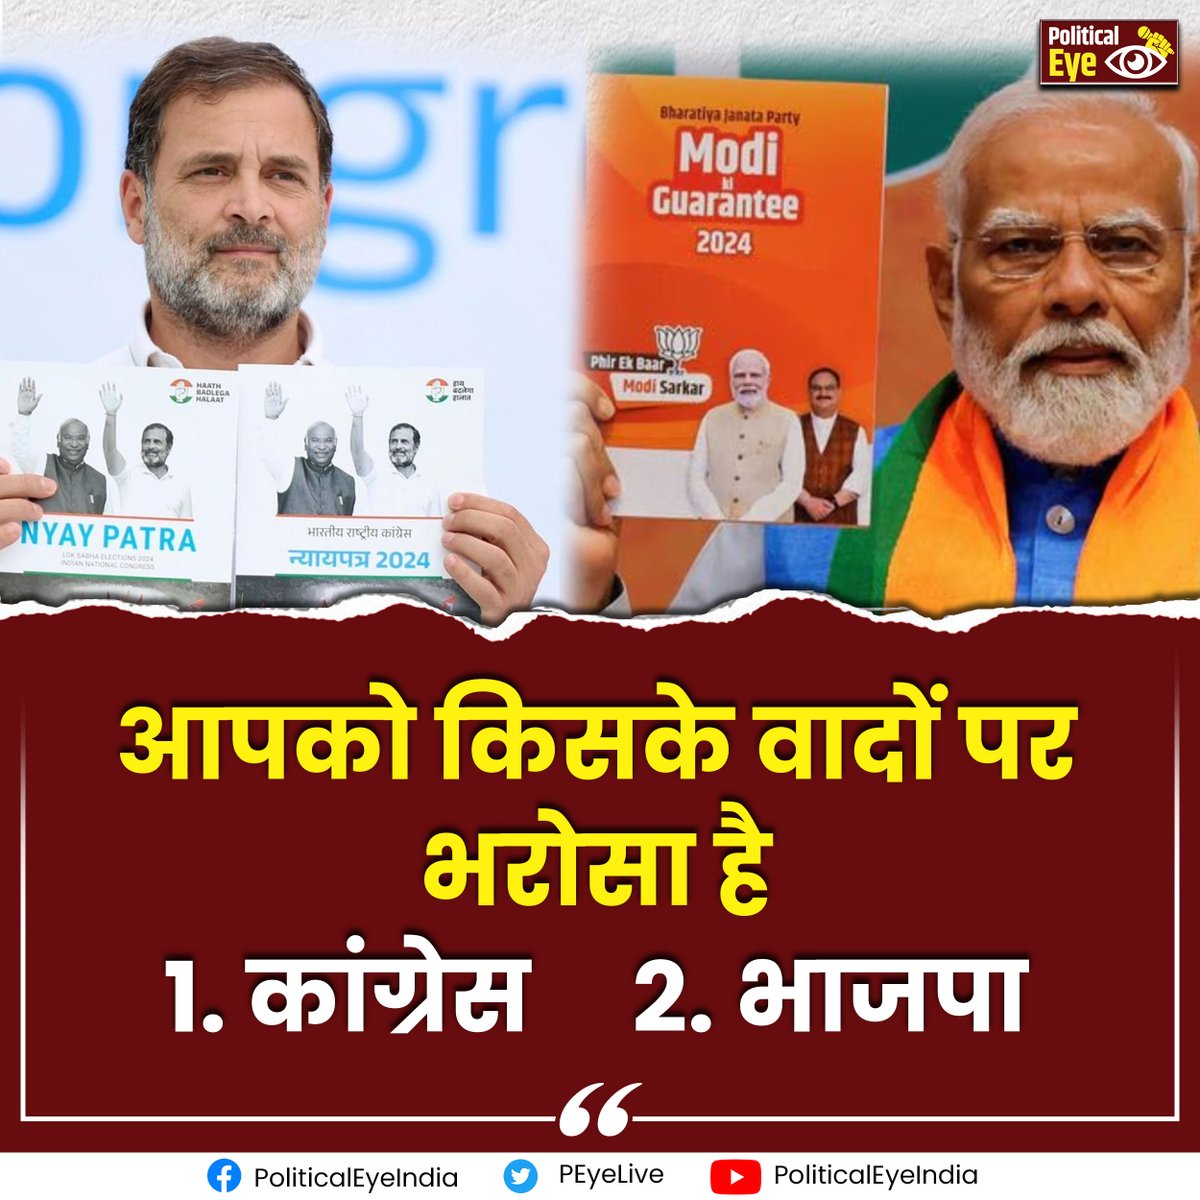 आपको किसके वादों पर भरोसा है 
1. कांग्रेस     2. भाजपा 

🙏 अपना जवाब कमेंट करें 🙏
#LokSabhaElection2024 #sankalppatra #ModiGuarantee